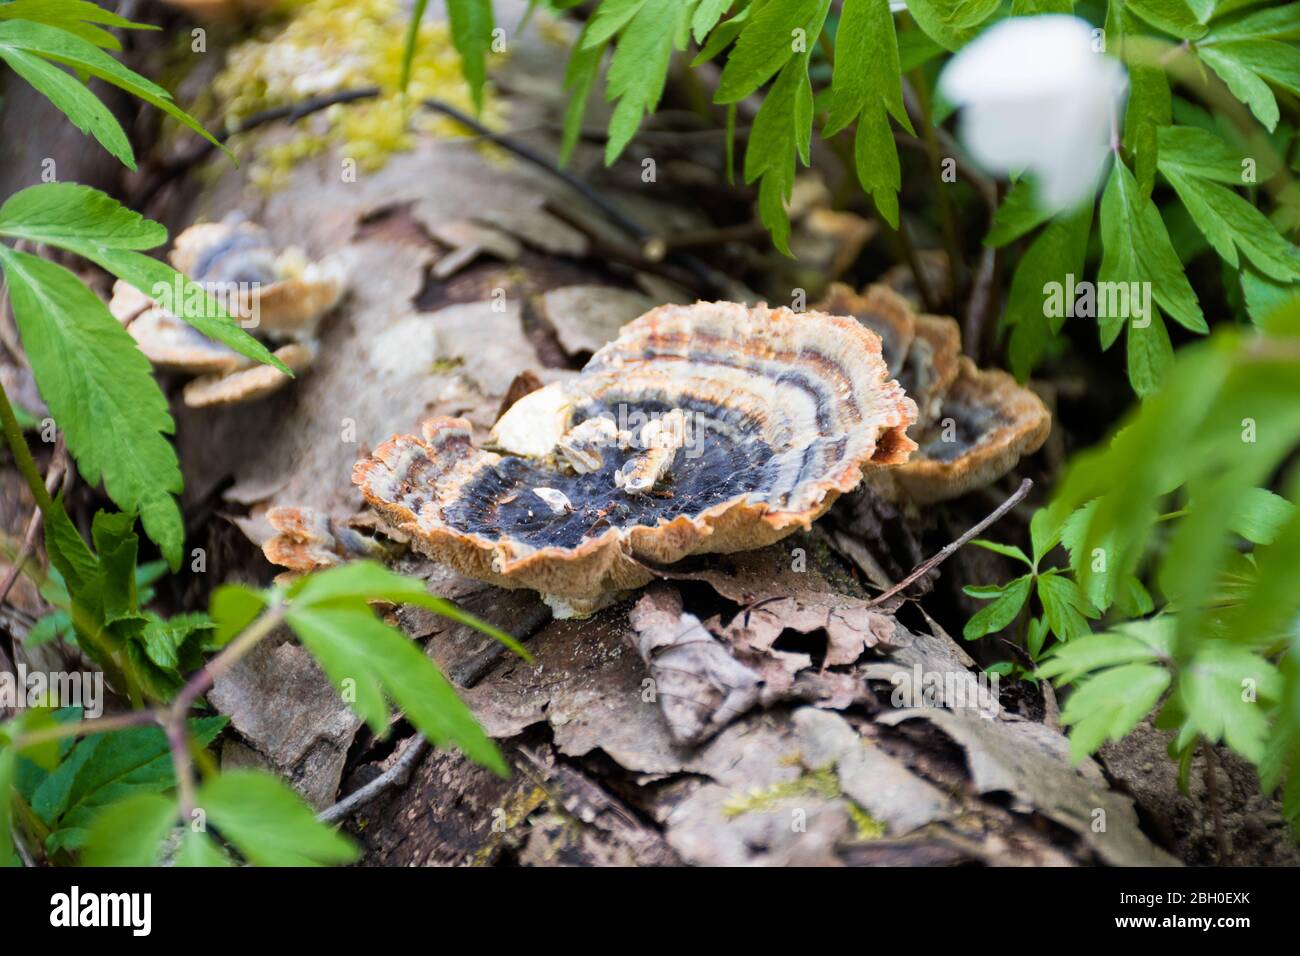 Der Pilz auf dem Stamm im moosigen Wald. Rauchige Polypore oder rauchige Bracket, Pilzarten, Pflanzenpathogen, die weiße Fäule in lebenden Bäumen verursacht Stockfoto